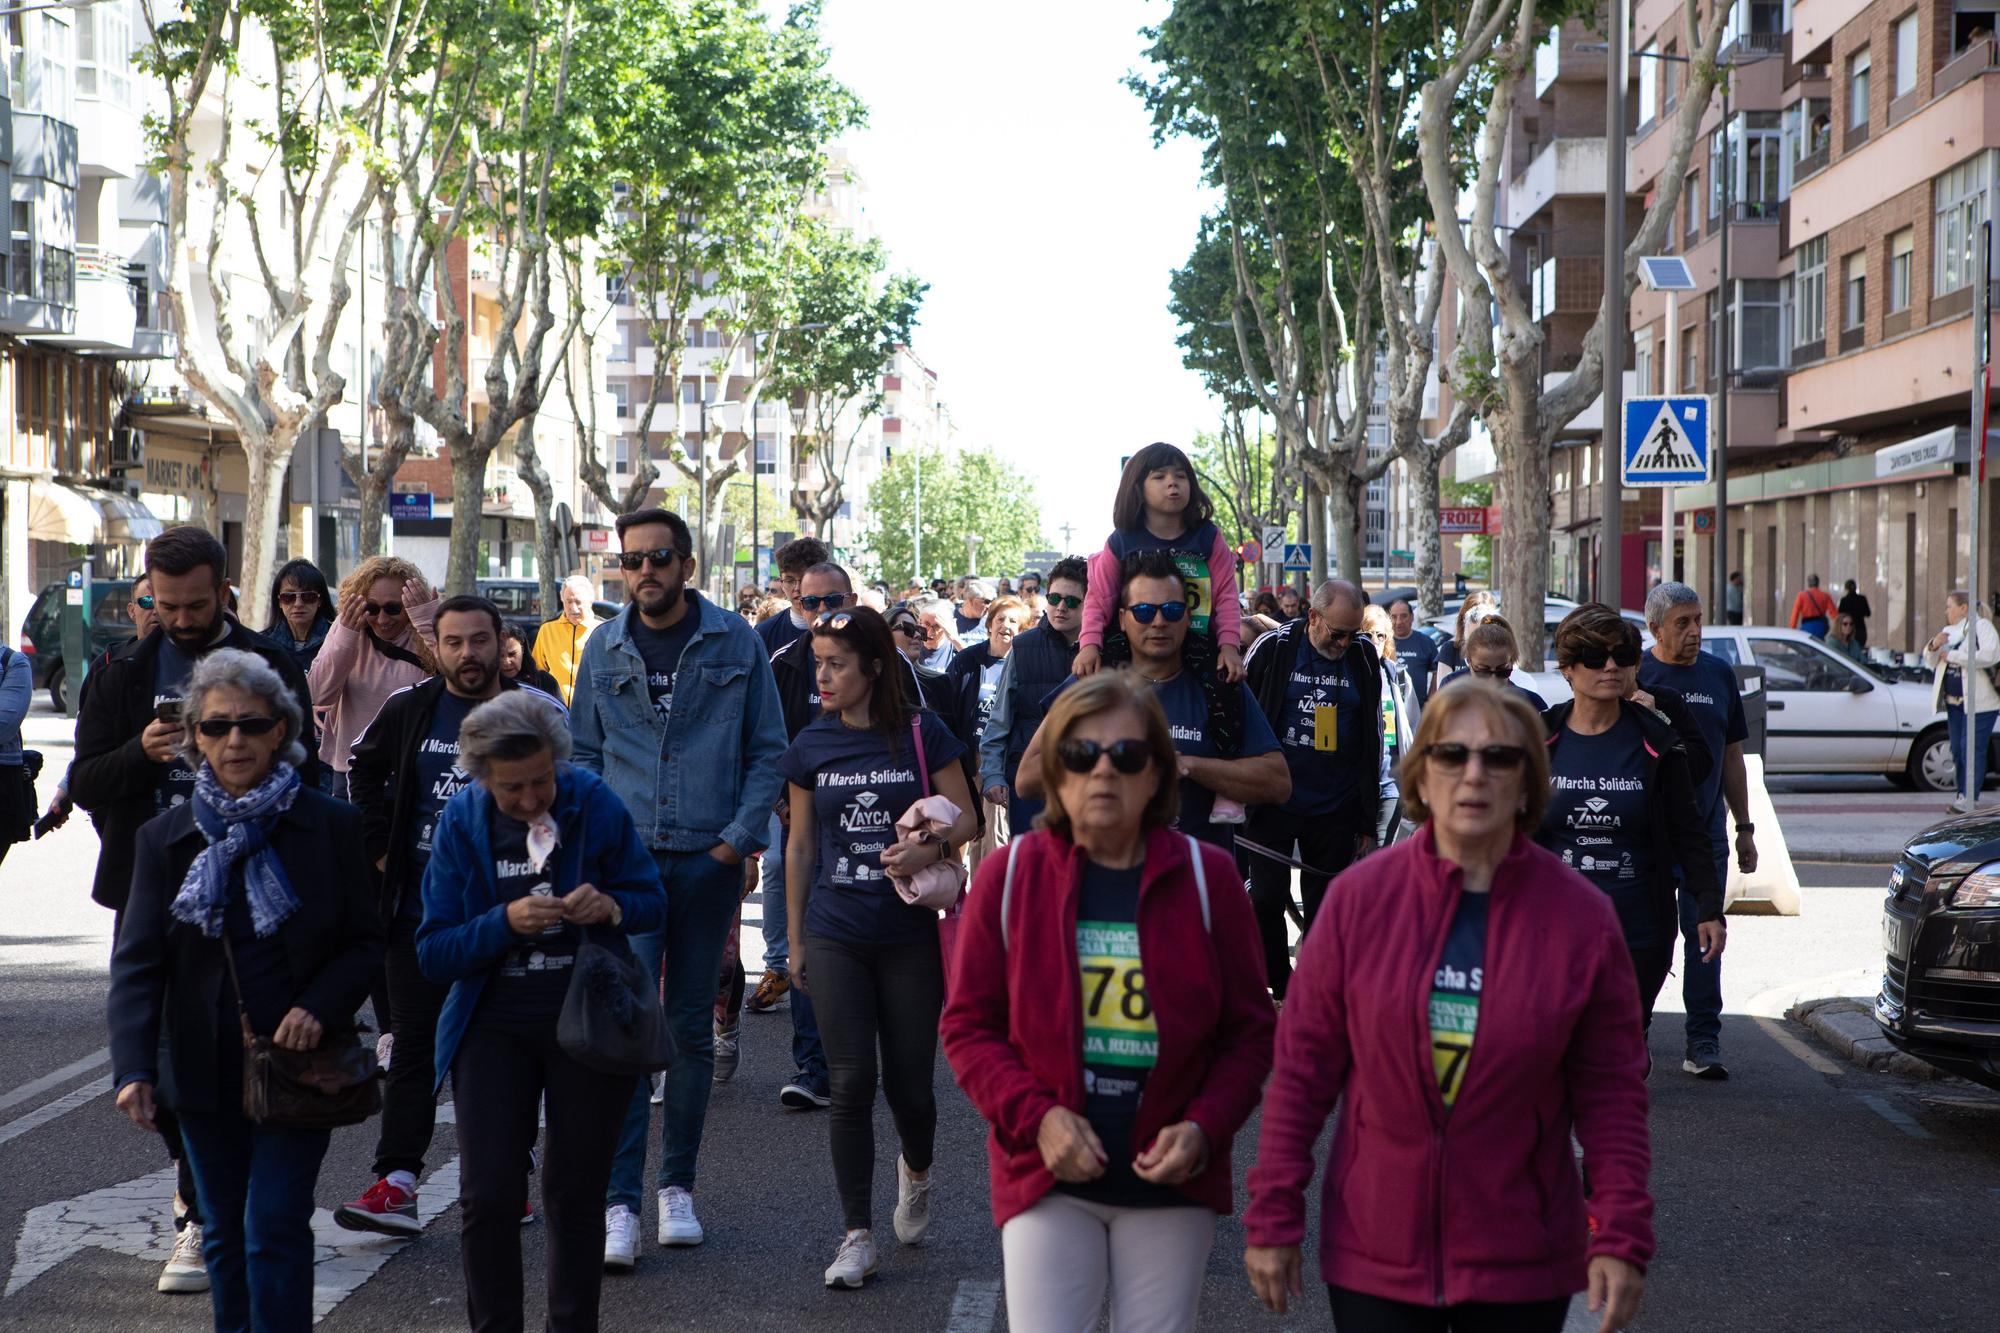 Marcha solidaria de Azayca, Asociación de Ayuda a los Enfermos con Cáncer de Zamora